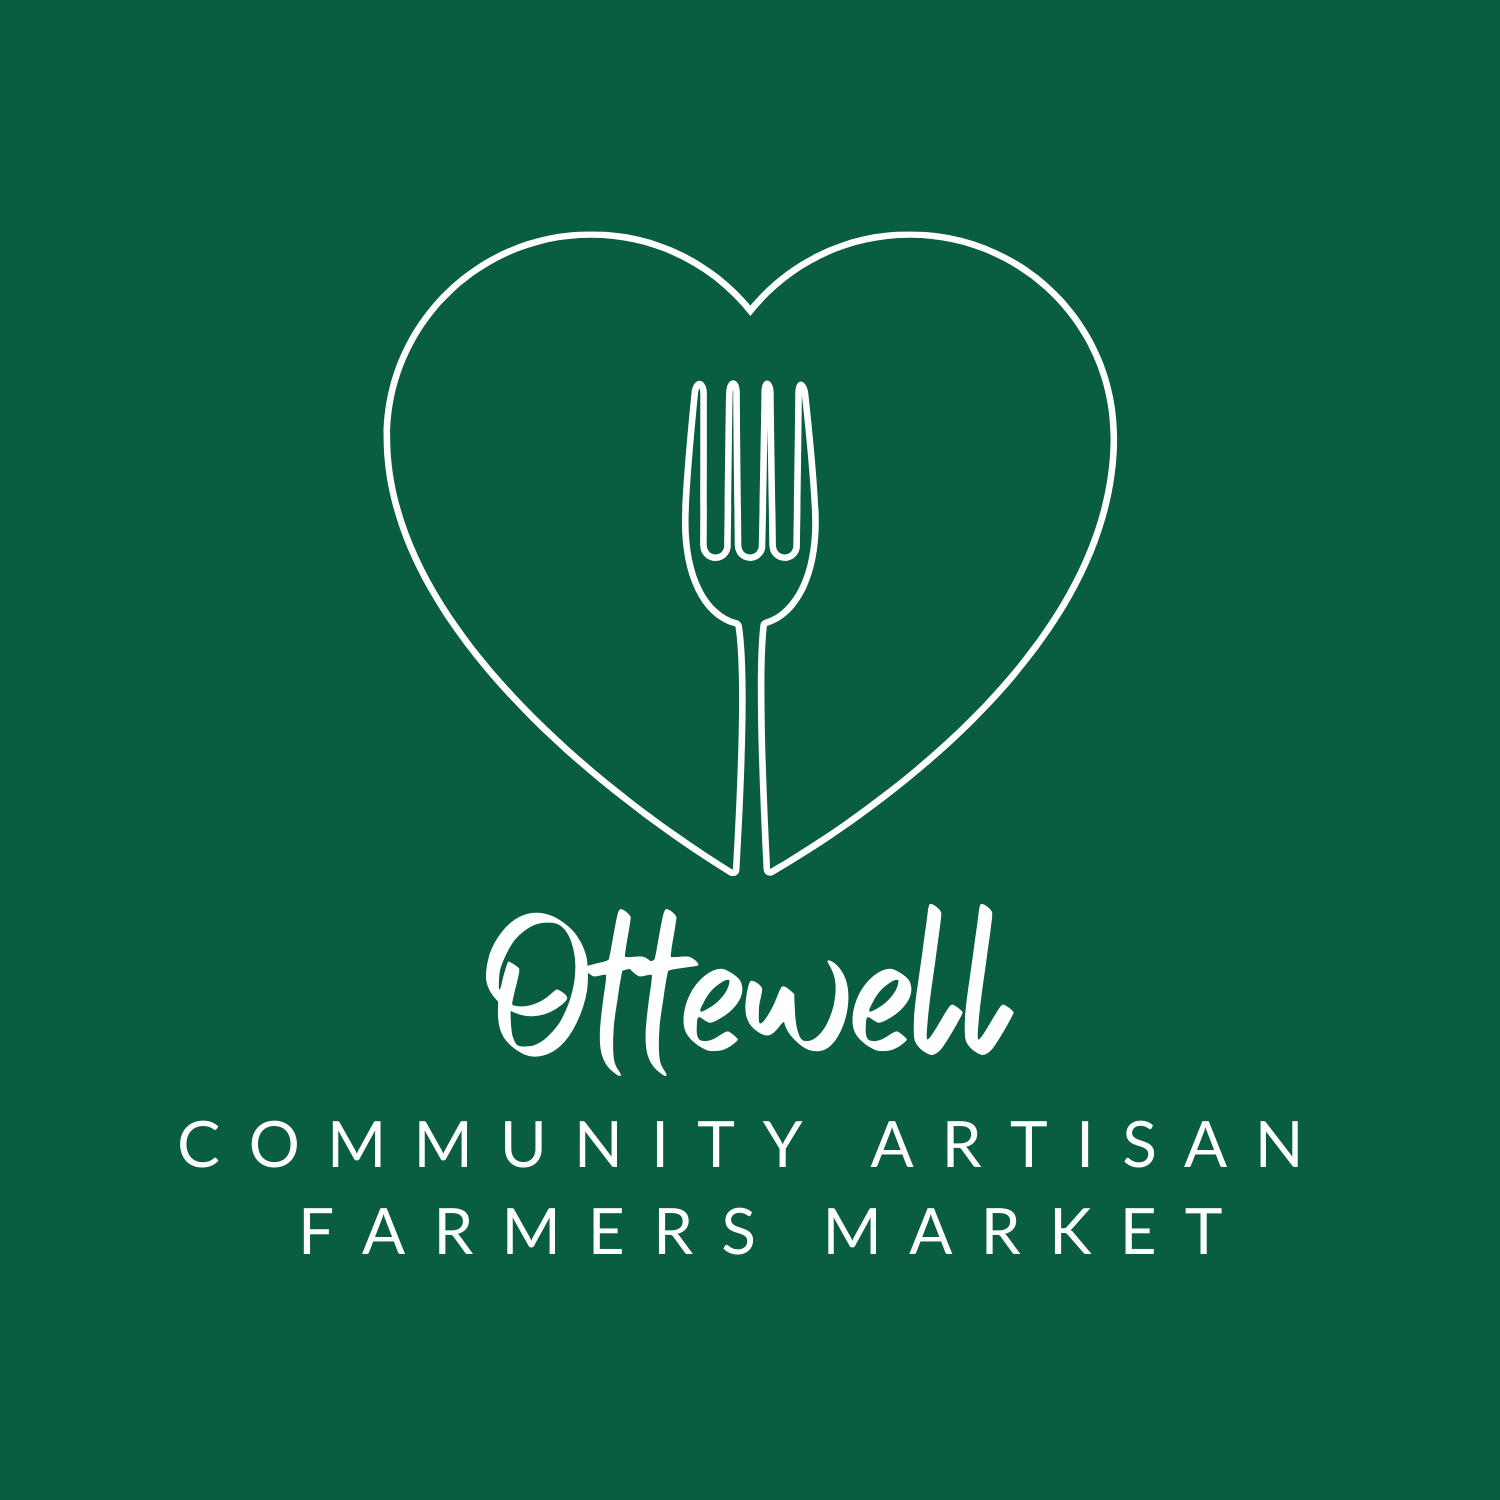 Ottewell farmers market logo of fork in heart